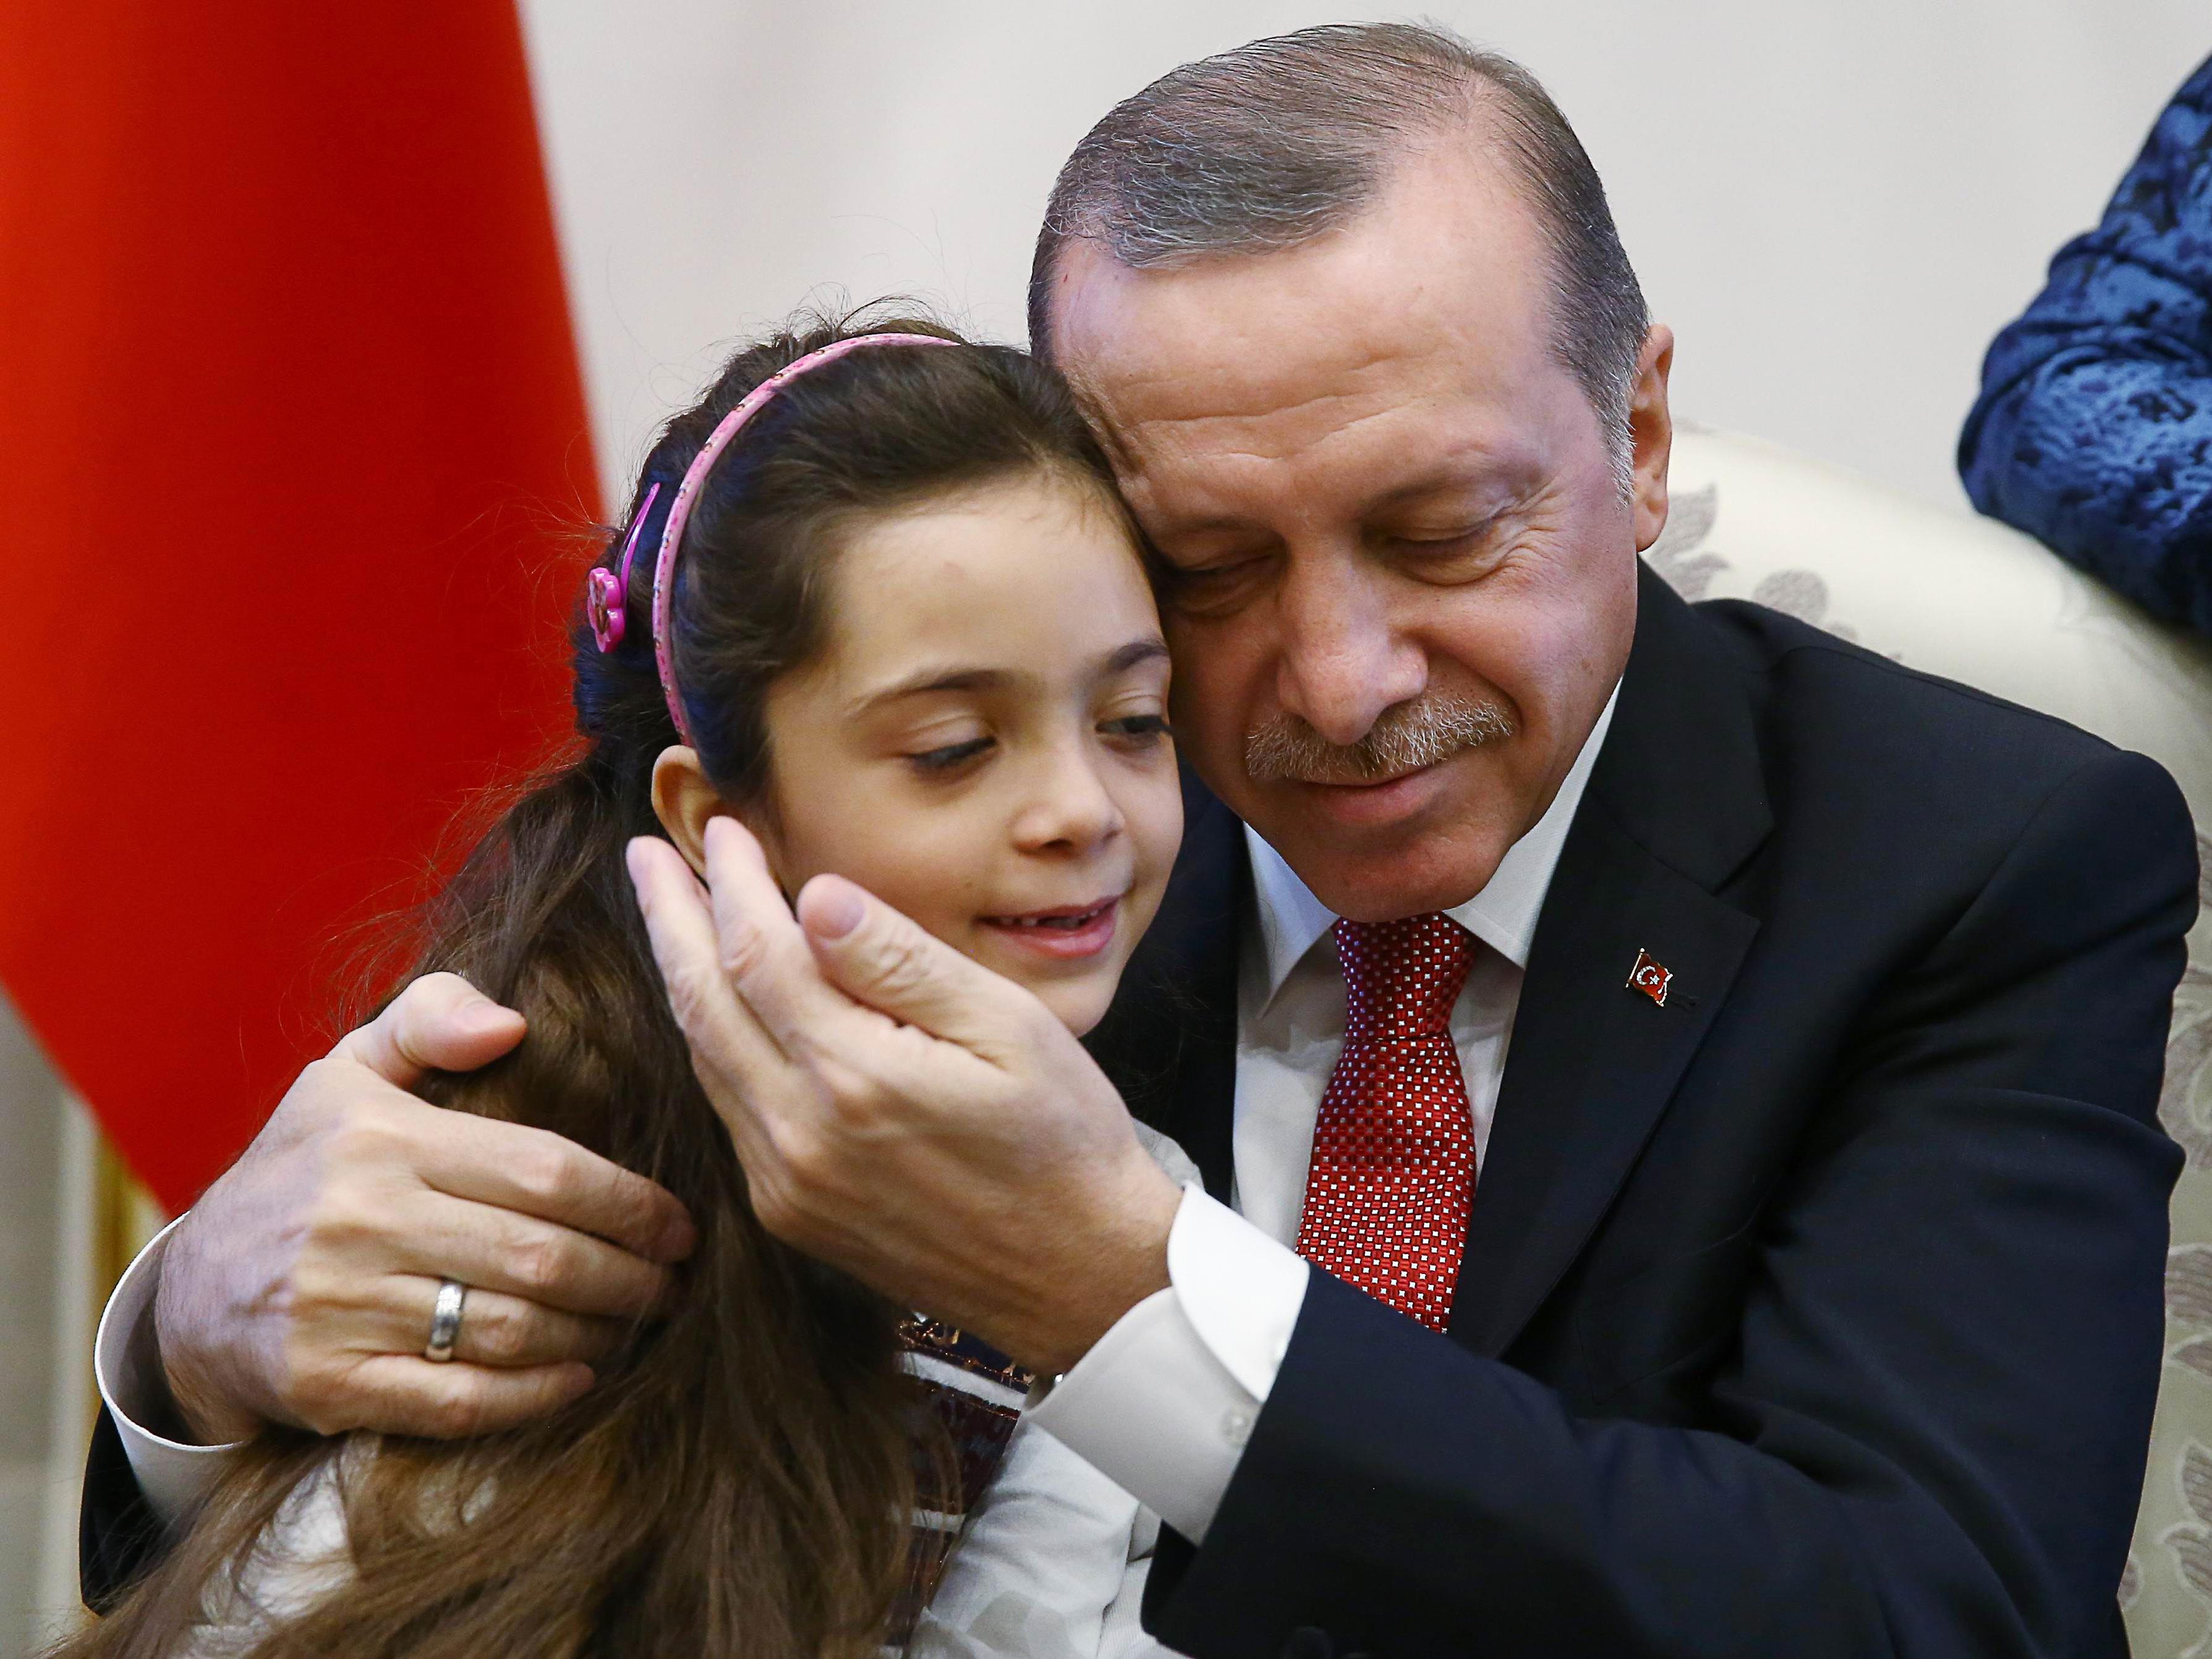 . Der türkische Präsident veröffentlichte am Mittwoch Bilder von dem Treffen mit der siebenjährigen Bana Alabed und ihrer Familie.